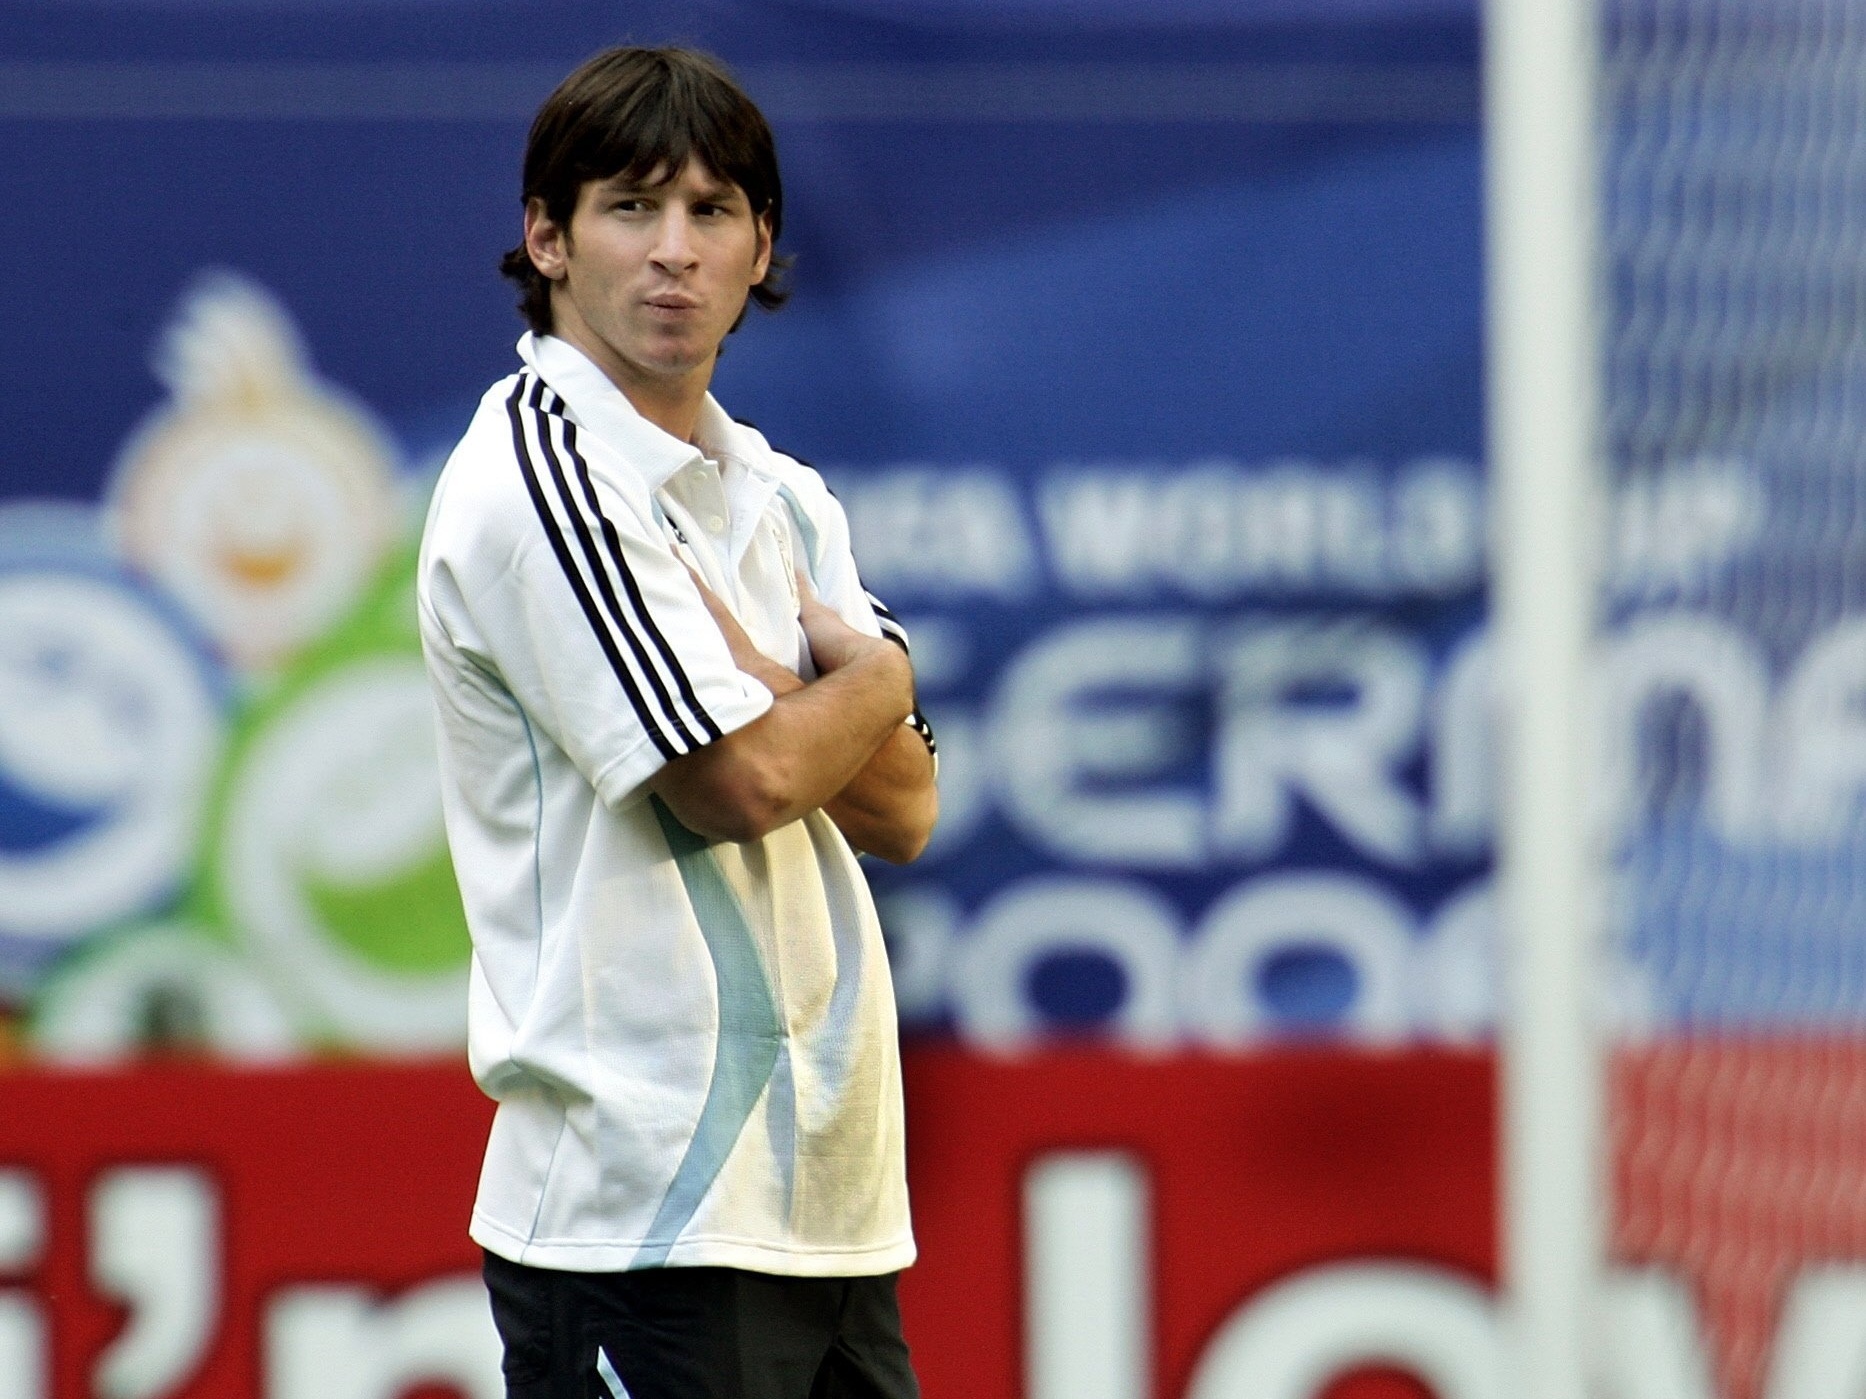 Lesão tirou Messi de jogo contra Alemanha na Copa 2006, revela zagueiro -  18/03/2020 - UOL Esporte